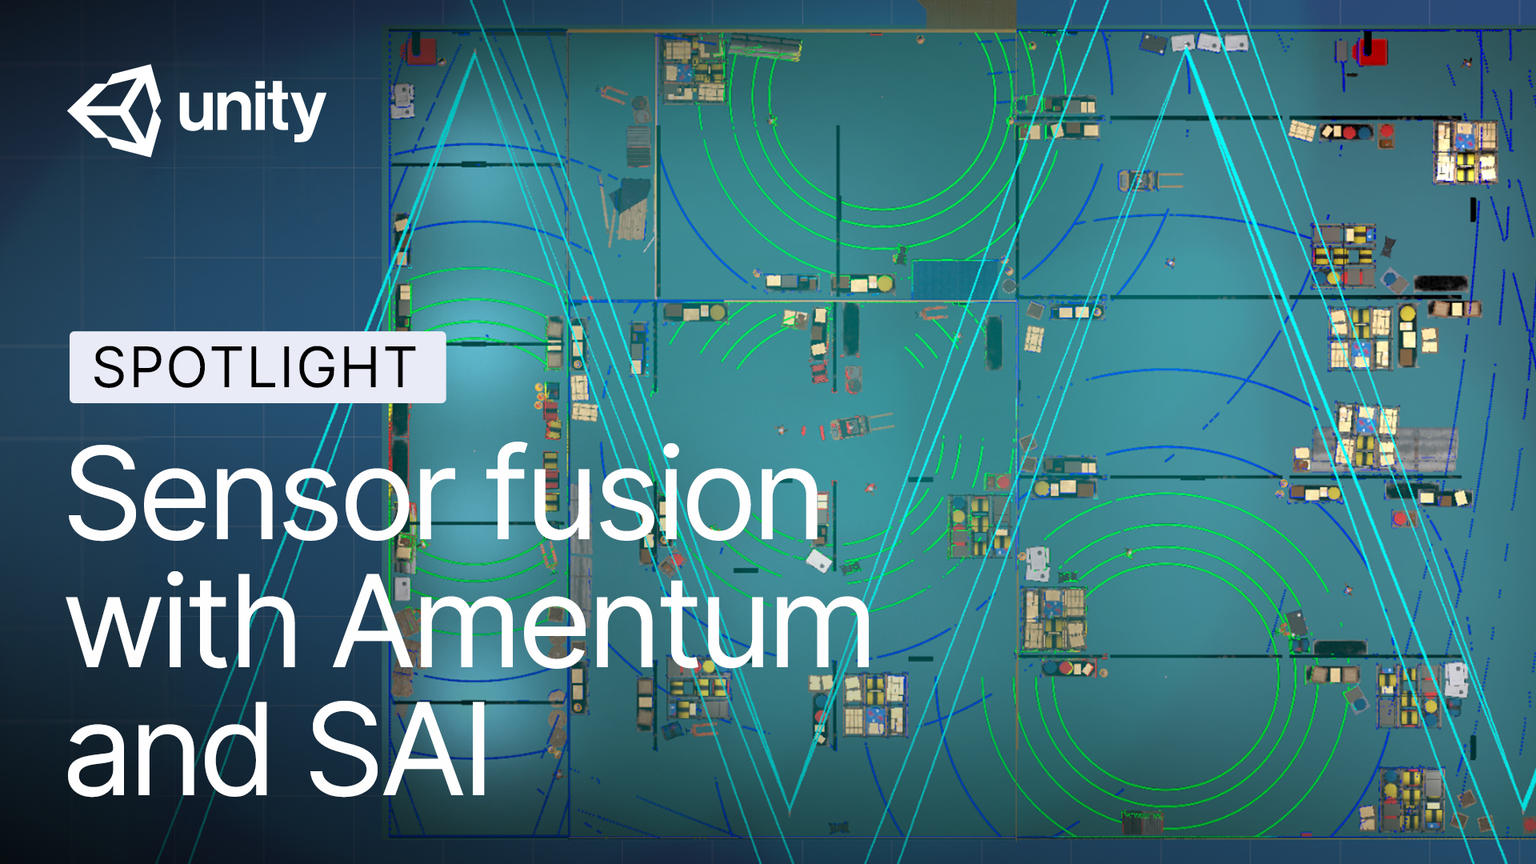 Sensor fusion with Amentum and SAI